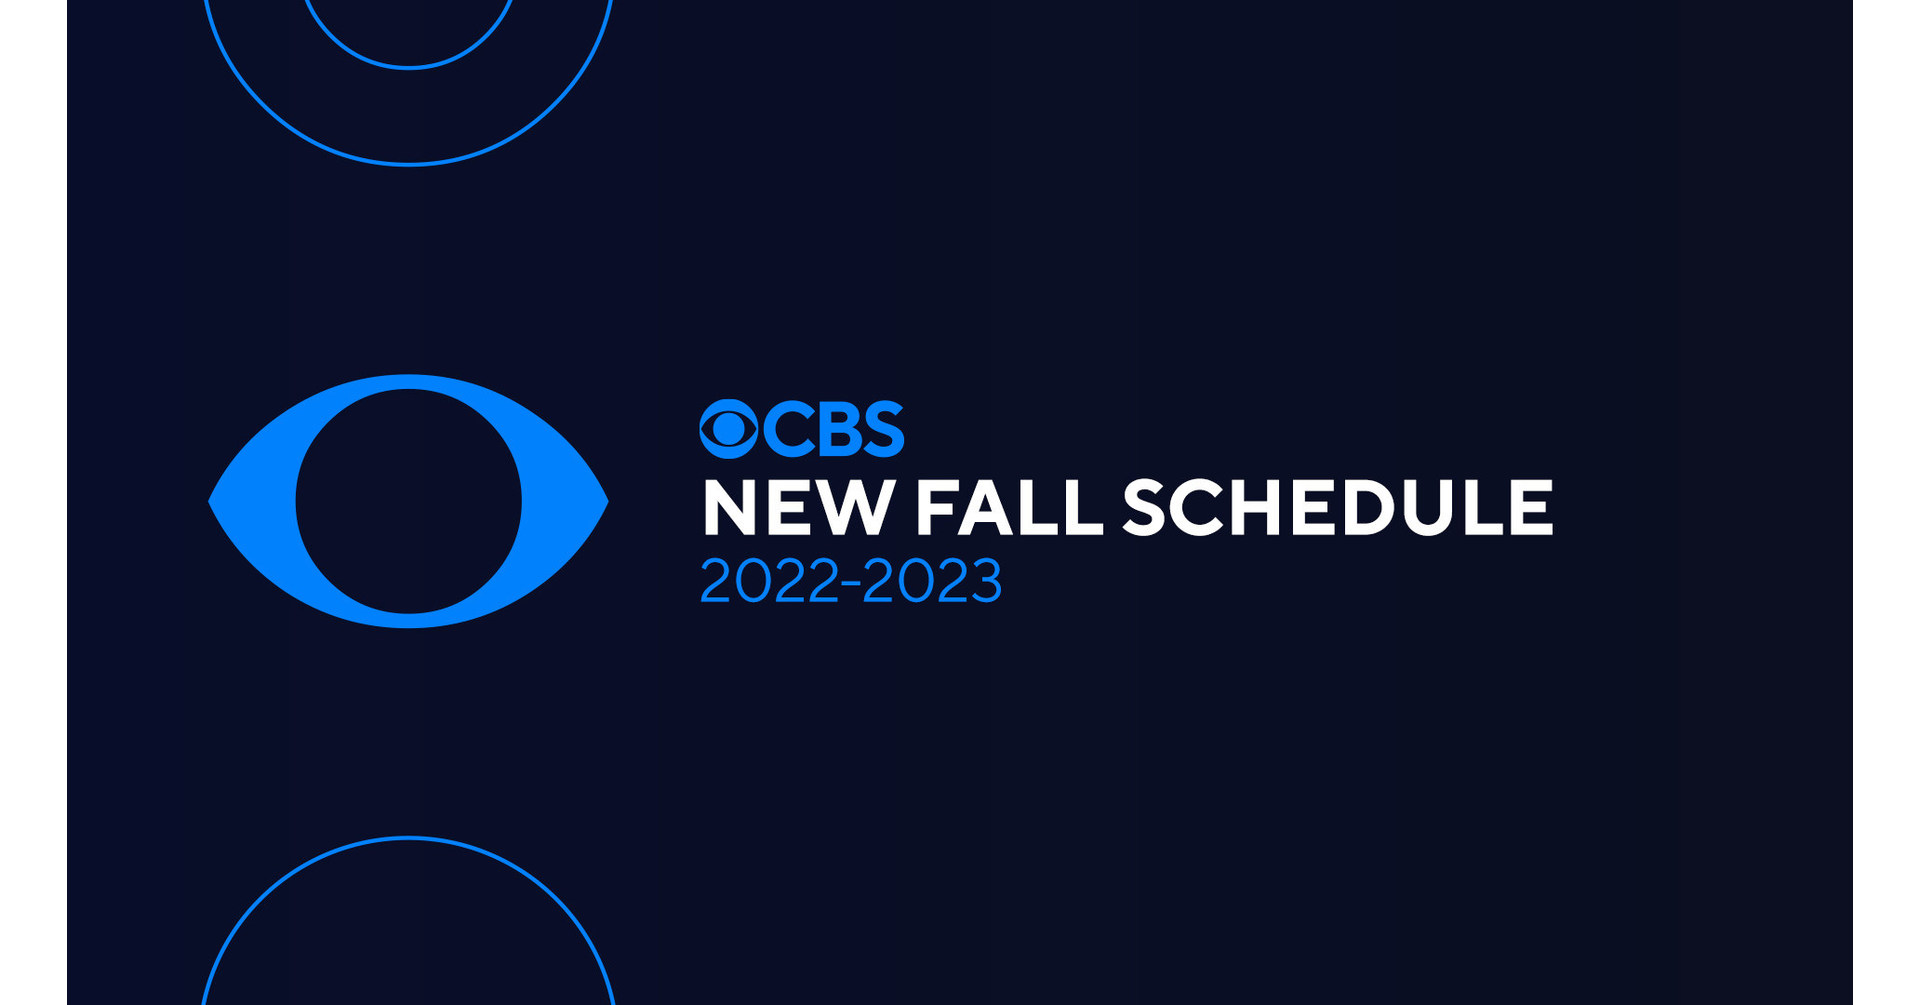 CBS UNVEILS ITS 2022-2023 PRIMETIME LINEUP